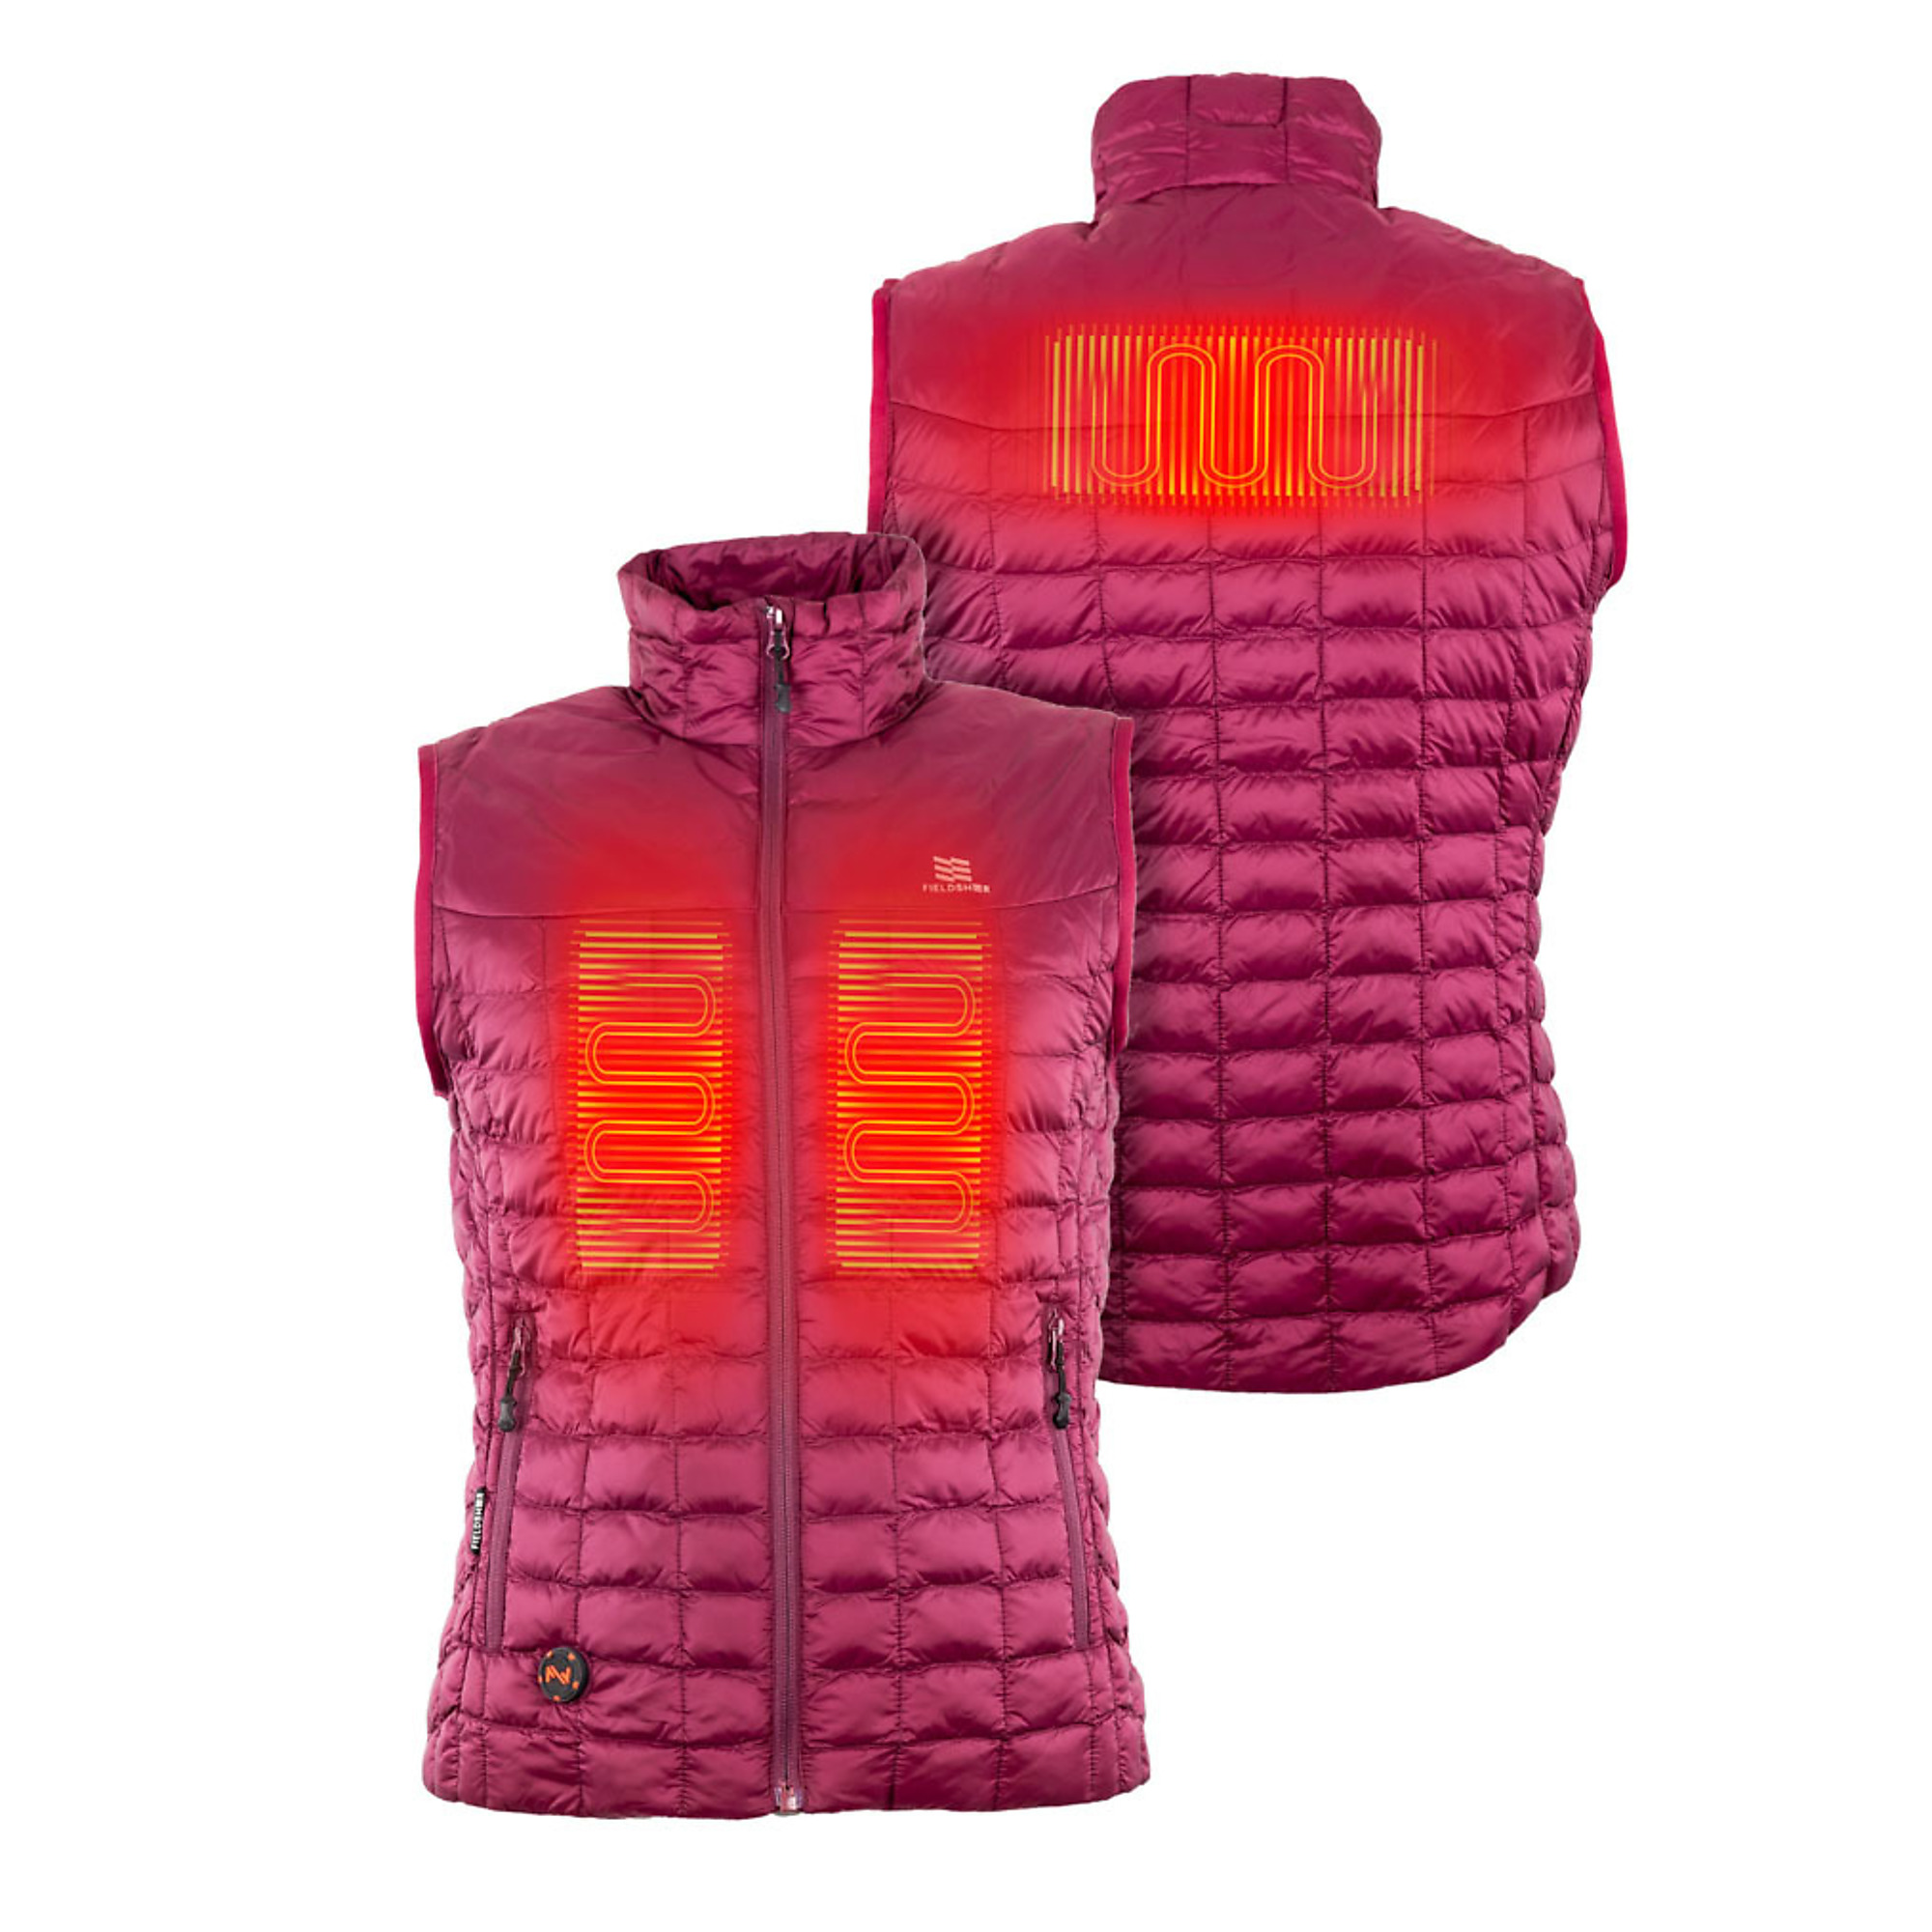 Fieldsheer, Women's 7.4v Backcountry Heated Vest, Size S, Color Red, Model MWWV04310220